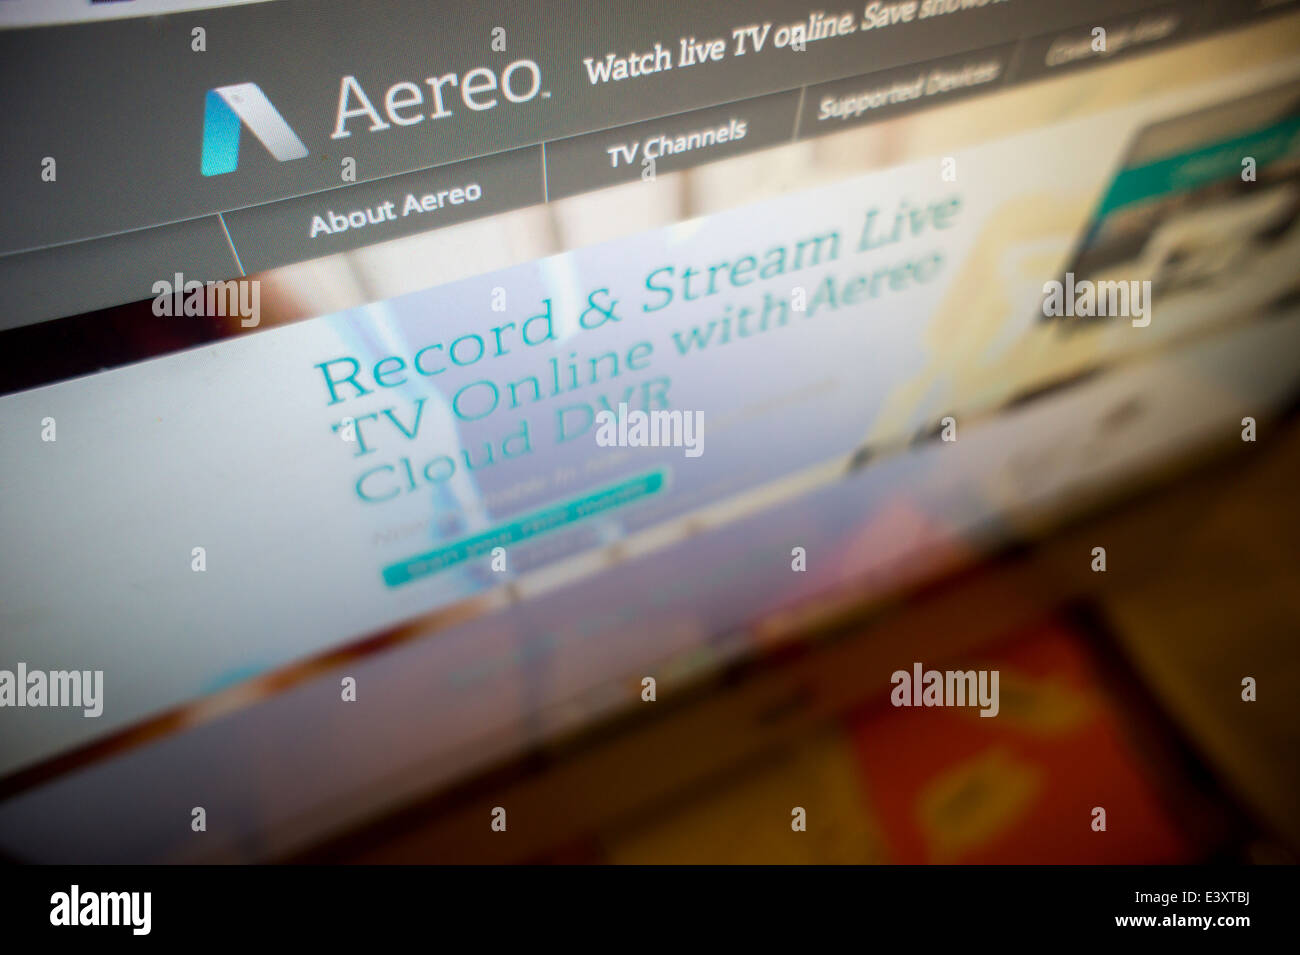 Le site internet de l'Aereo internet télévision publique à New York Banque D'Images